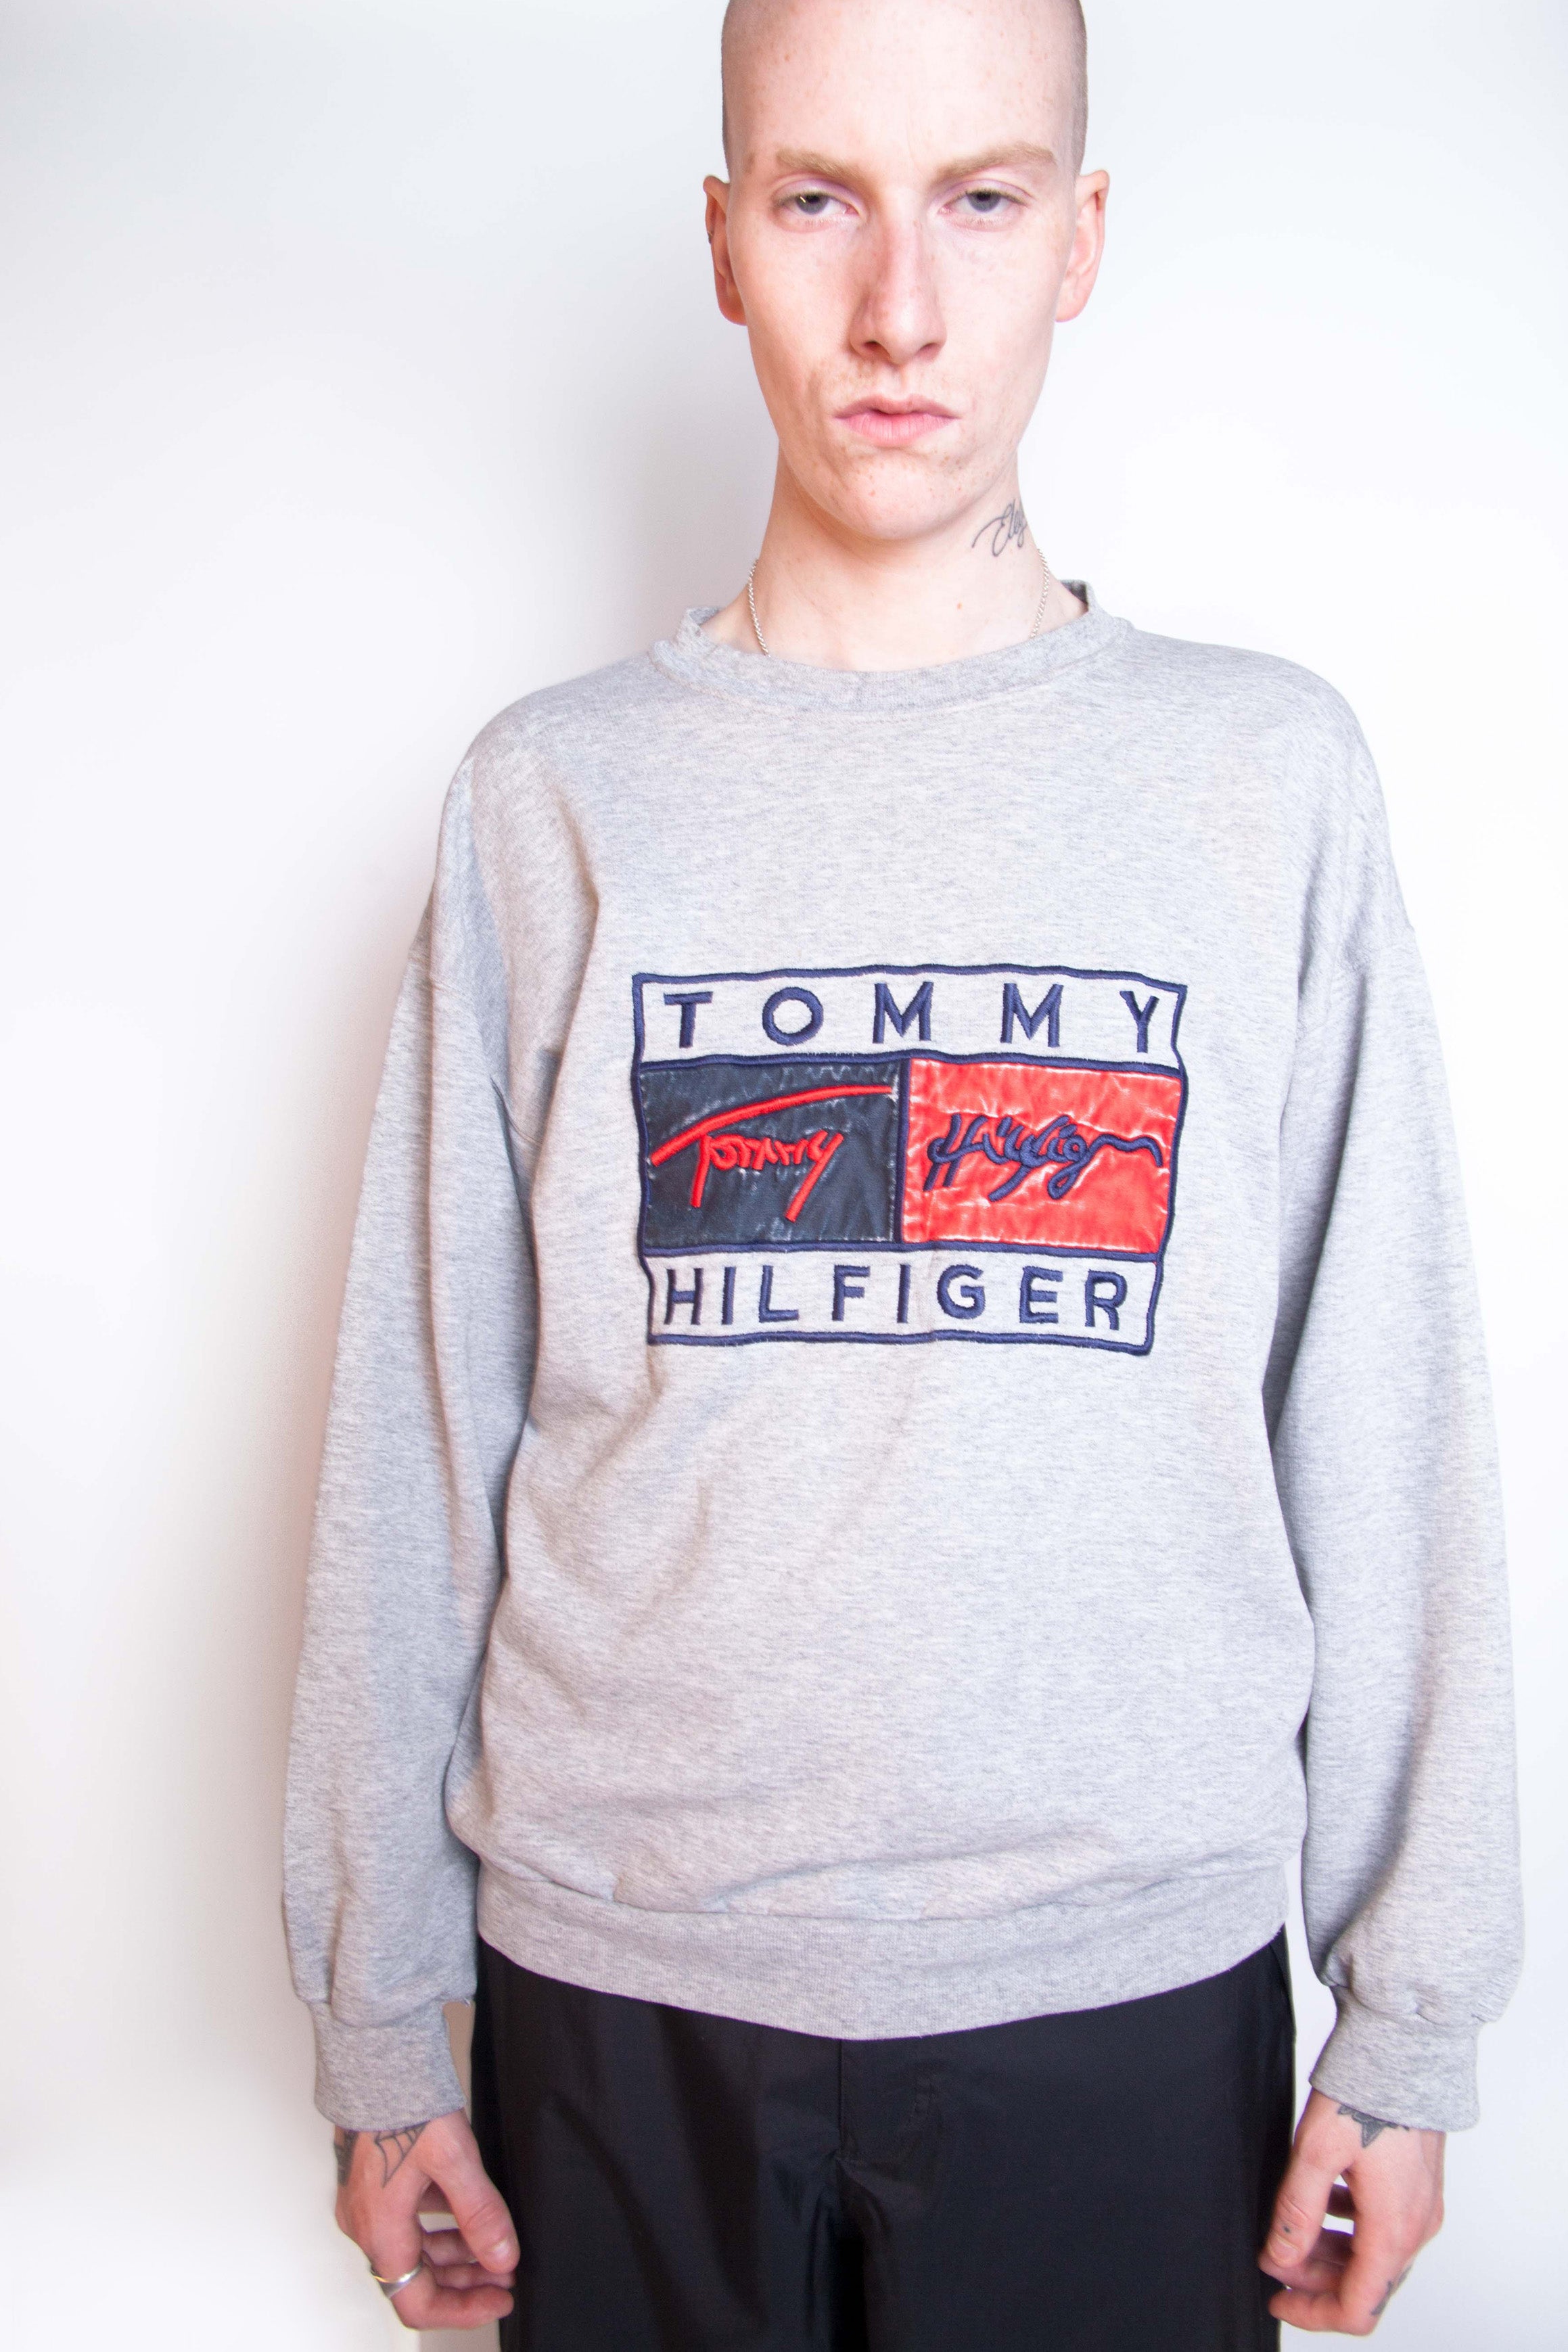 Vintage Tommy Hilfiger Crest Logo Crewneck Sweatshirt 90s Hip Hop